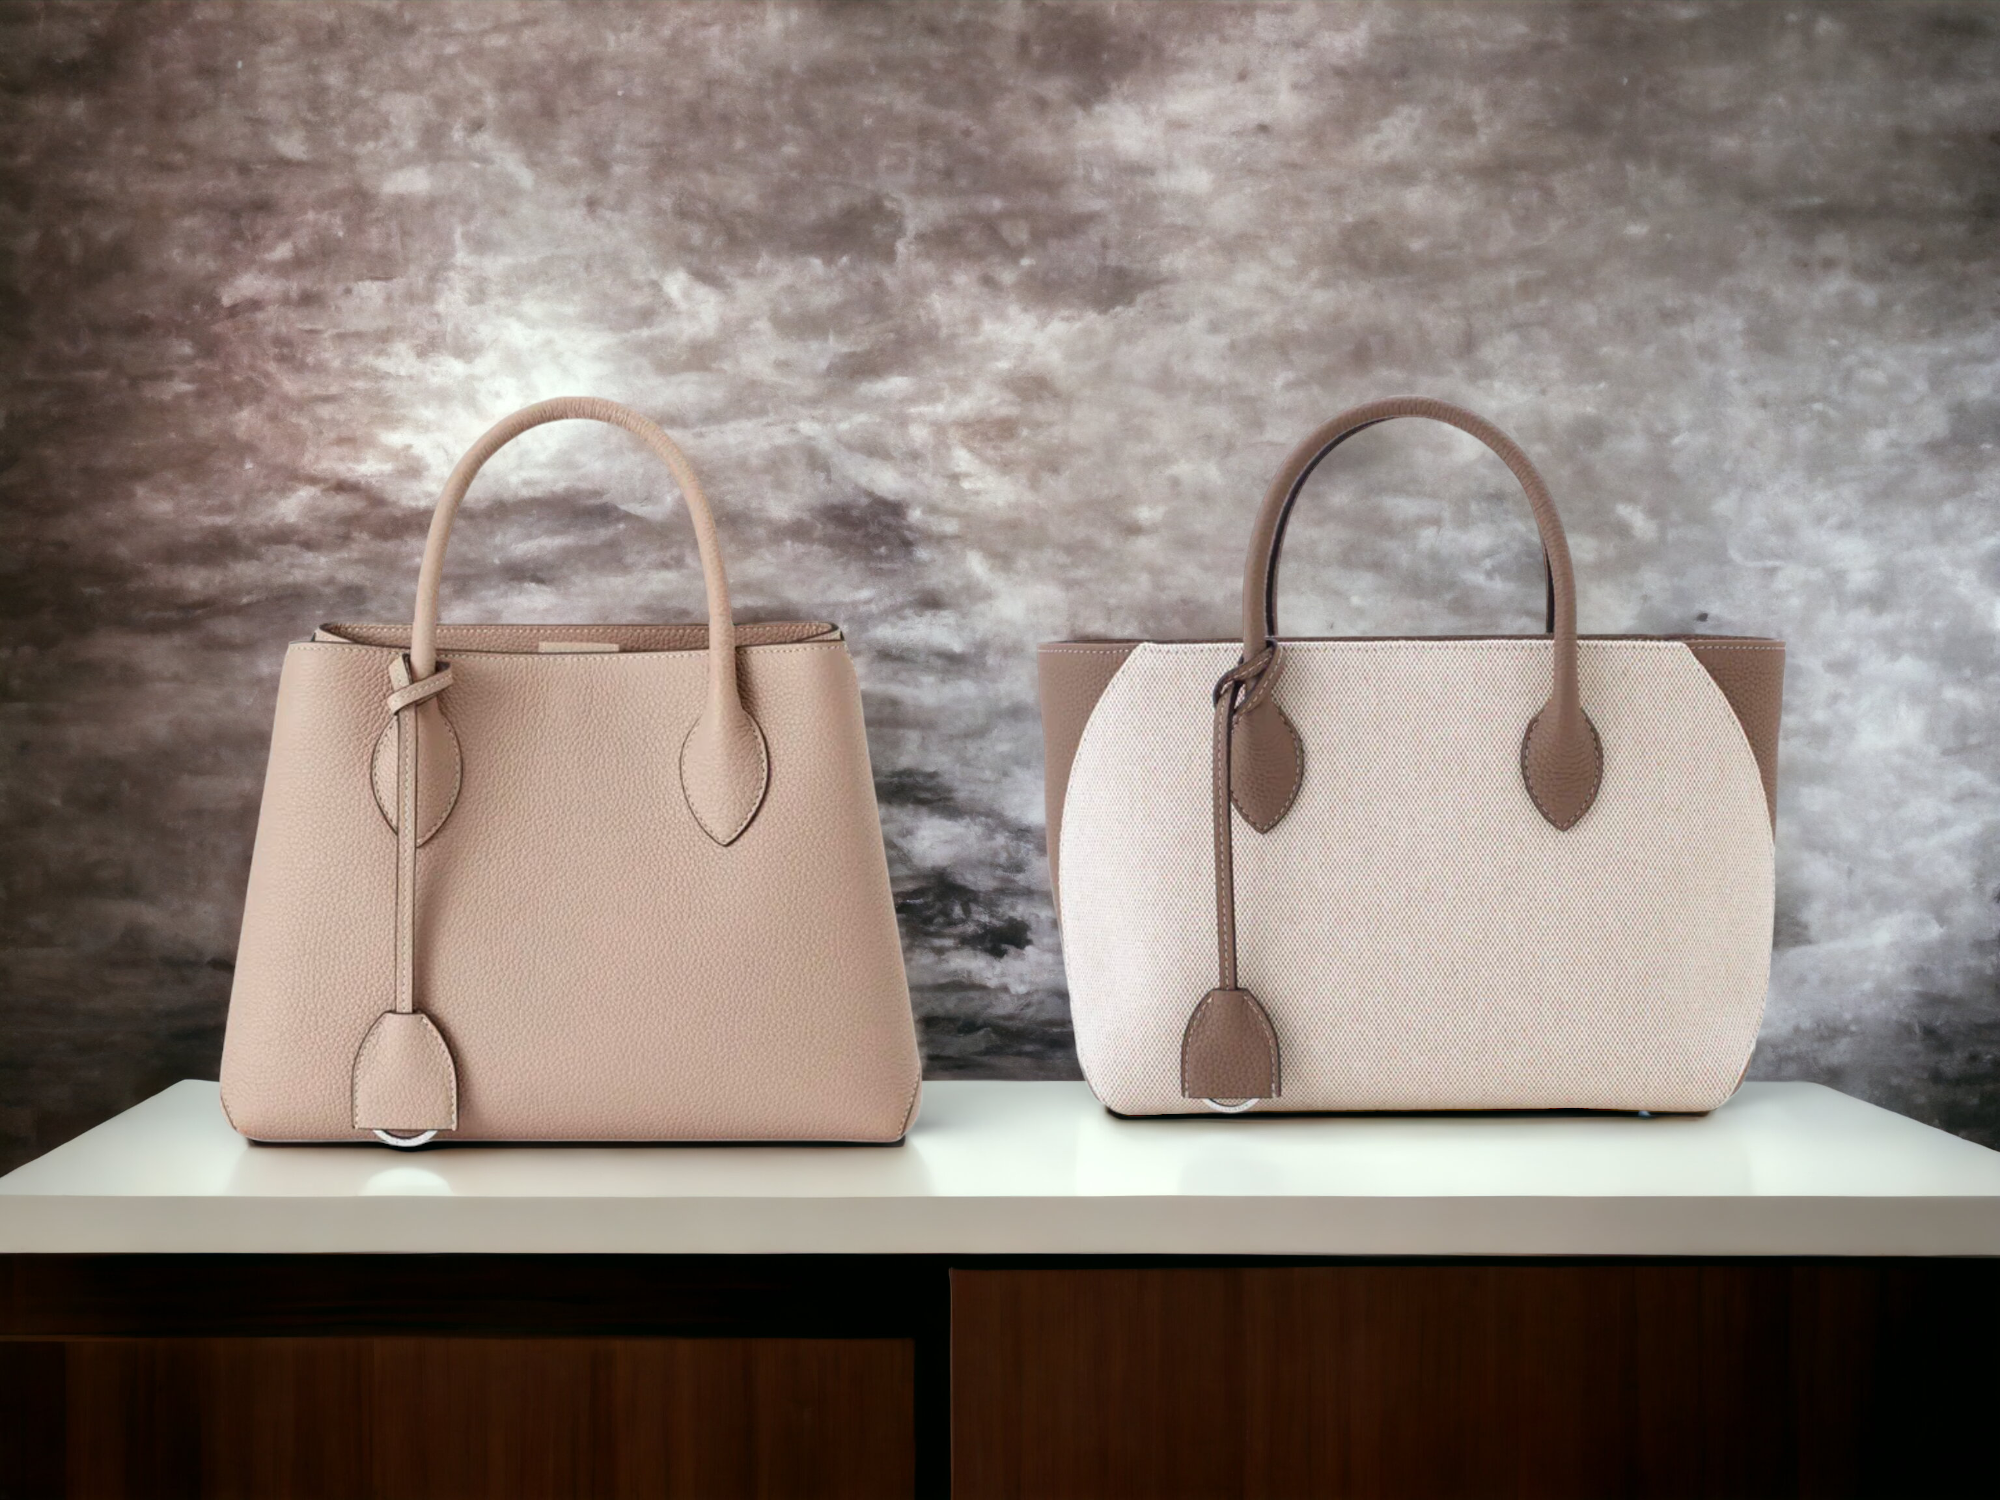 Eleganta ādas somiņa pret auduma somu no BONAVENTURA uz vienkārša fona, kas simbolizē greznību un kvalitāti.